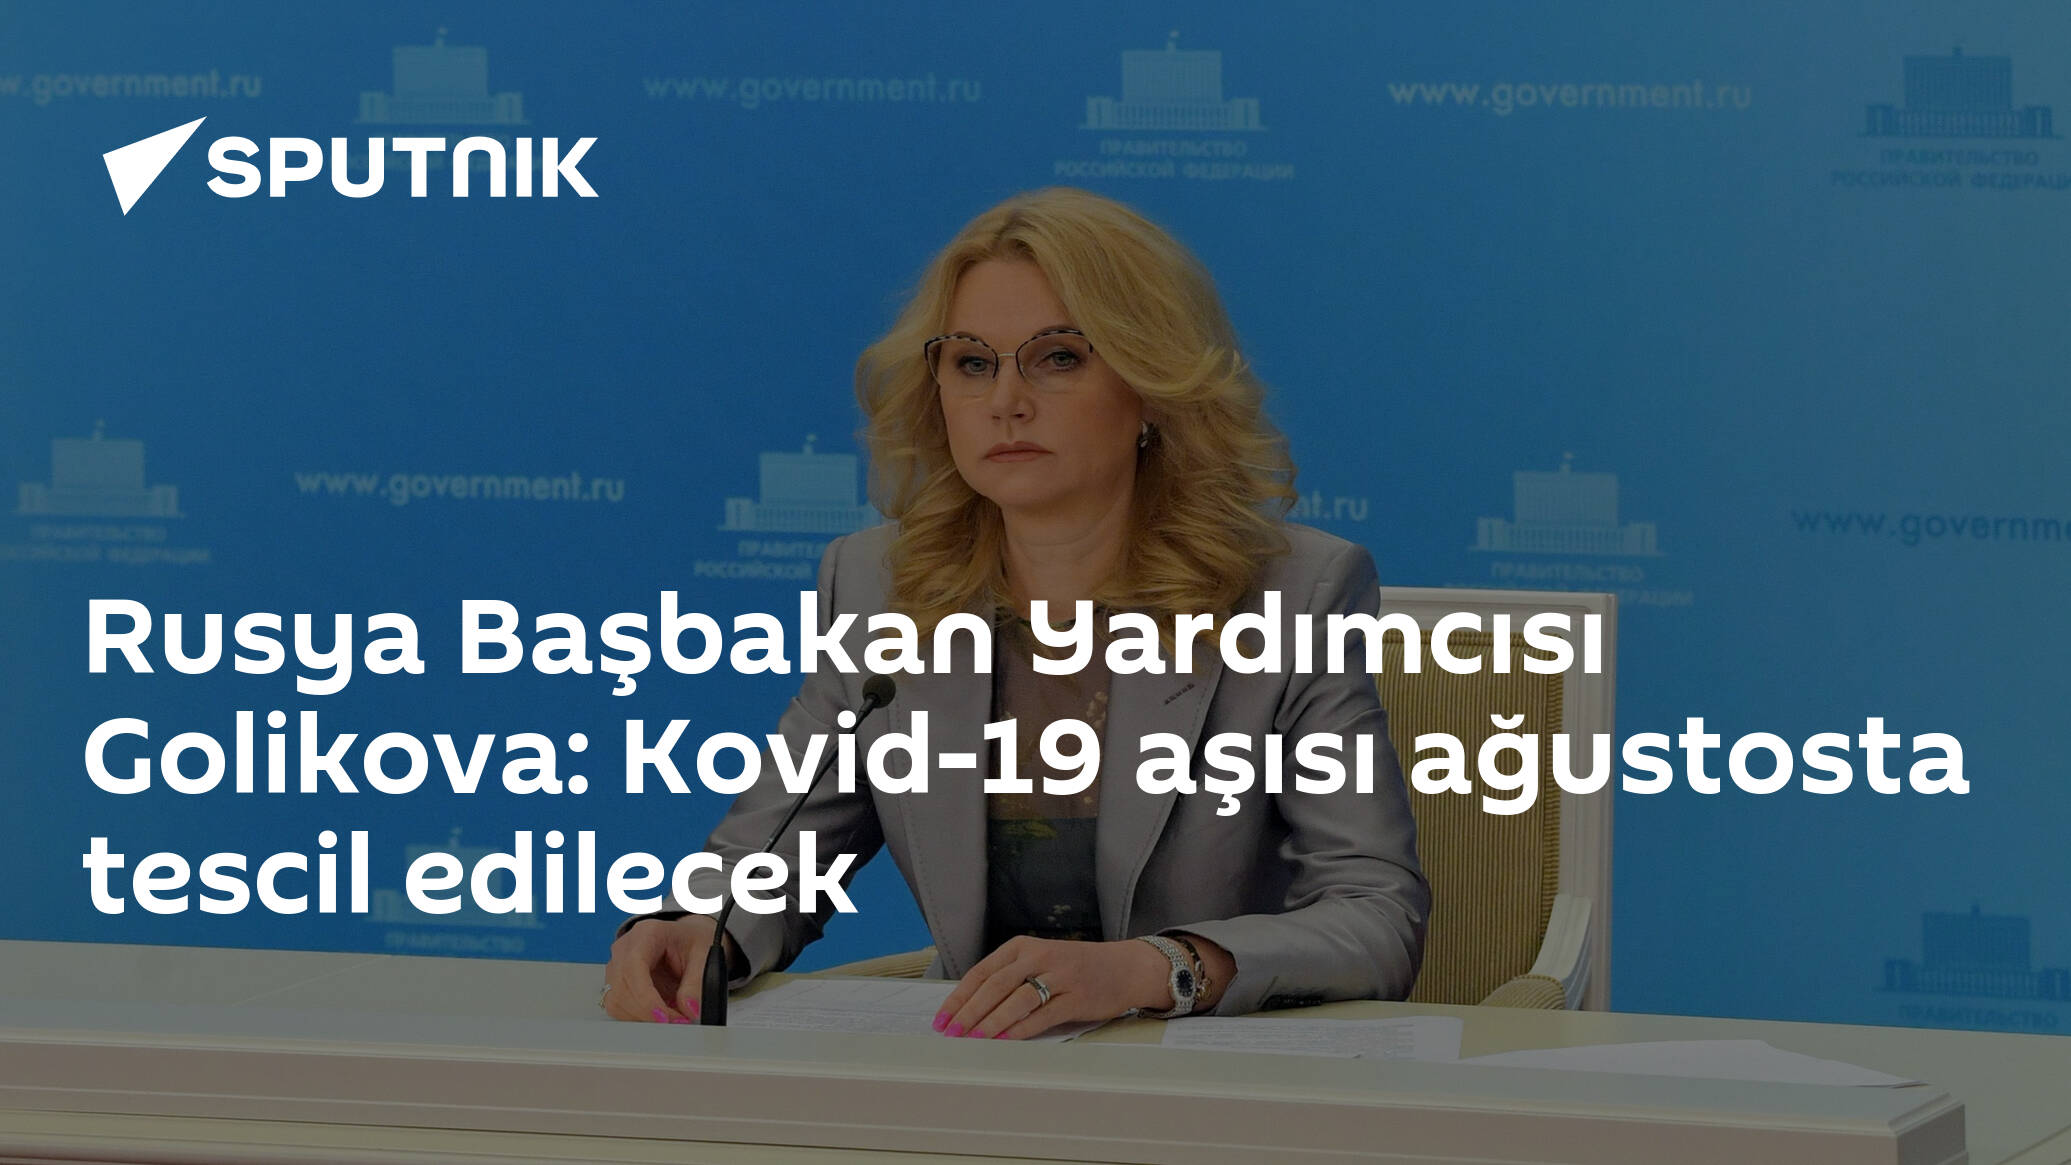 Rusya Başbakan Yardımcısı Golikova: Kovid-19 aşısı ağustosta tescil edilecek